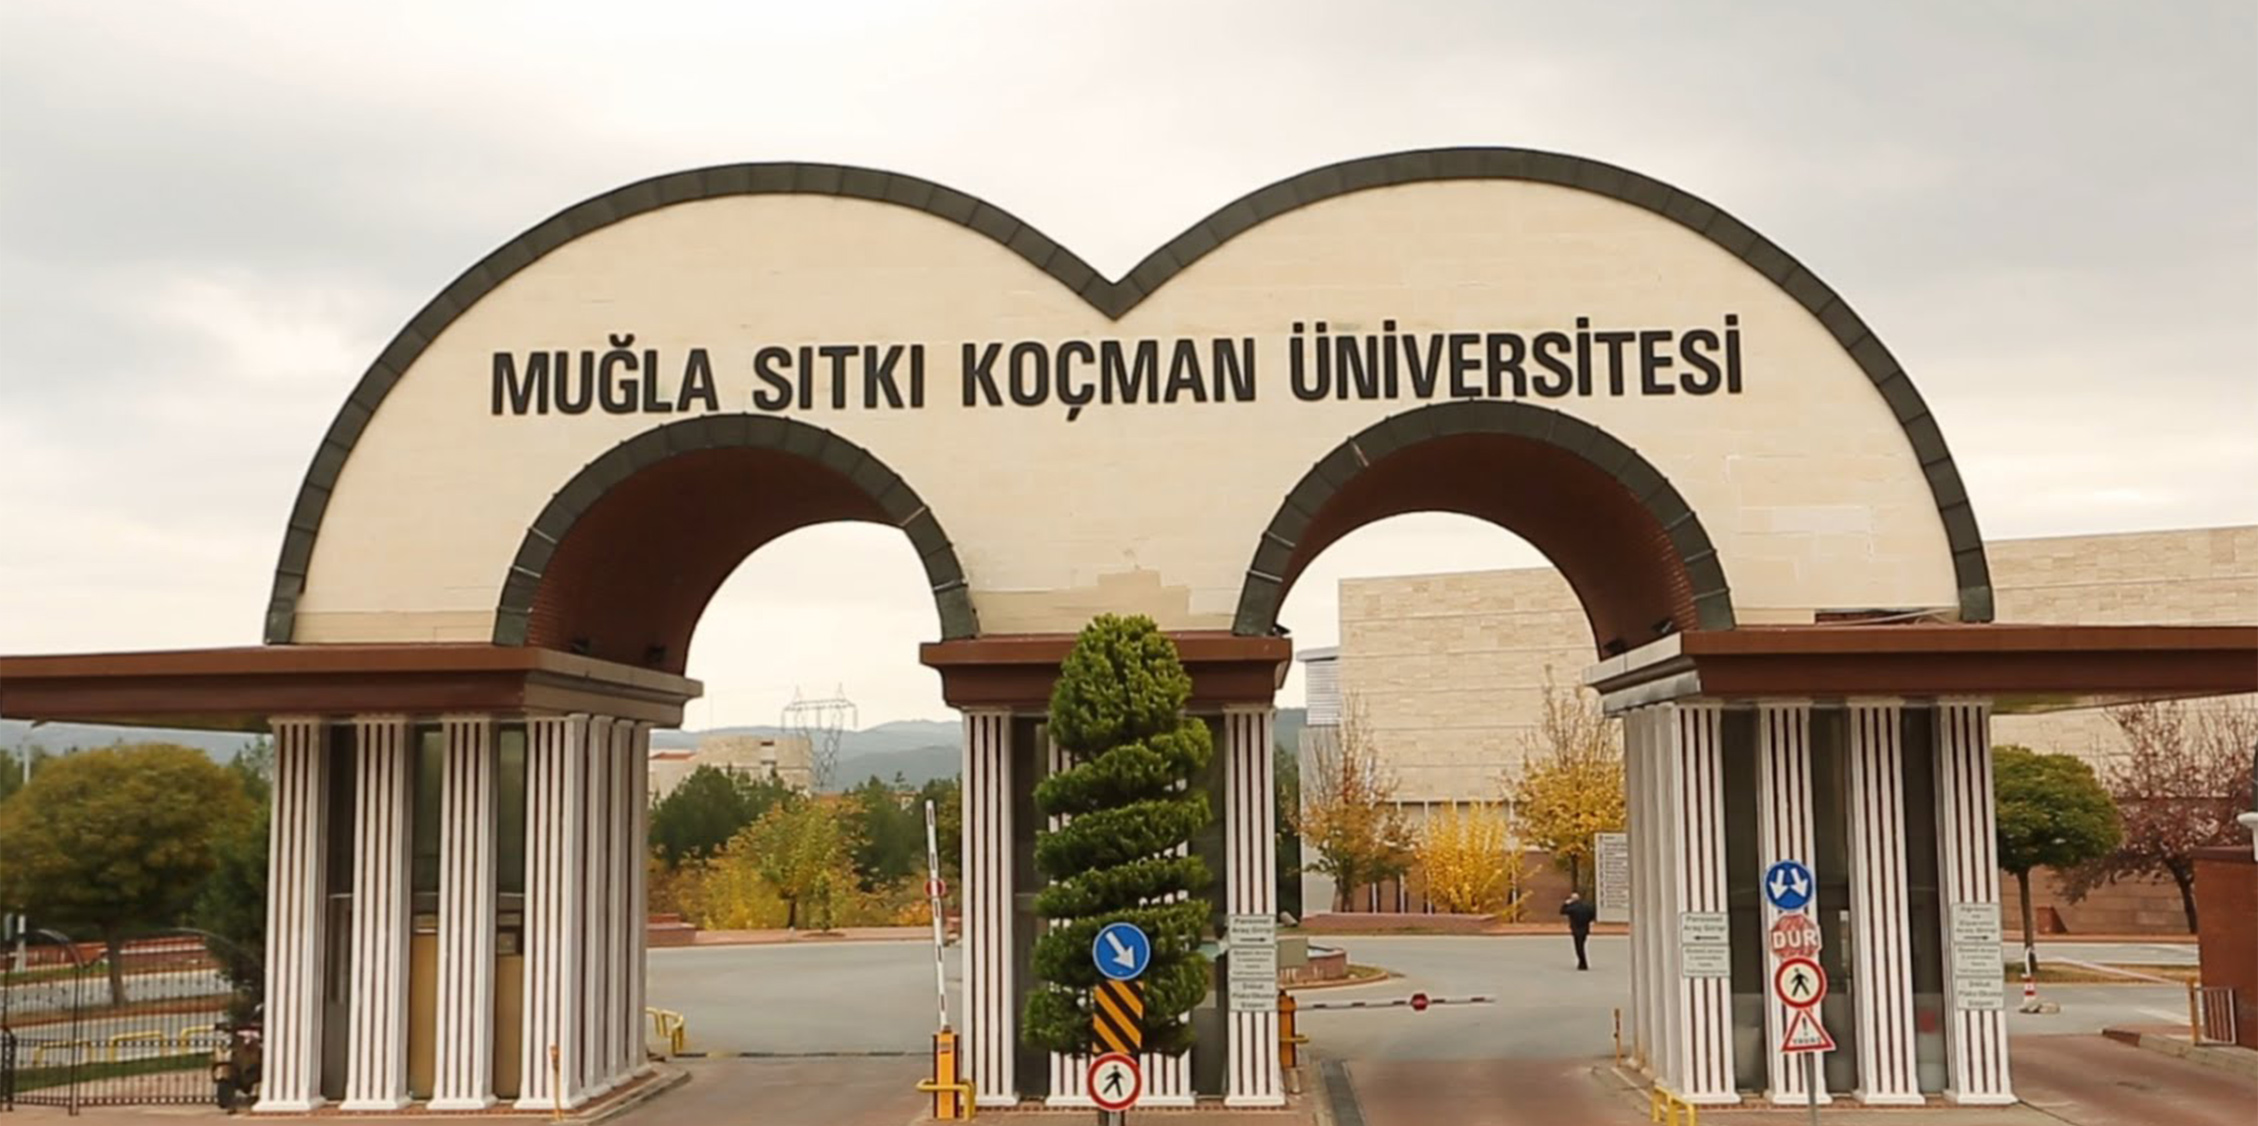 muglasitki universitesi find and study 1 - جامعة موغلا سيتكي كوتشمان